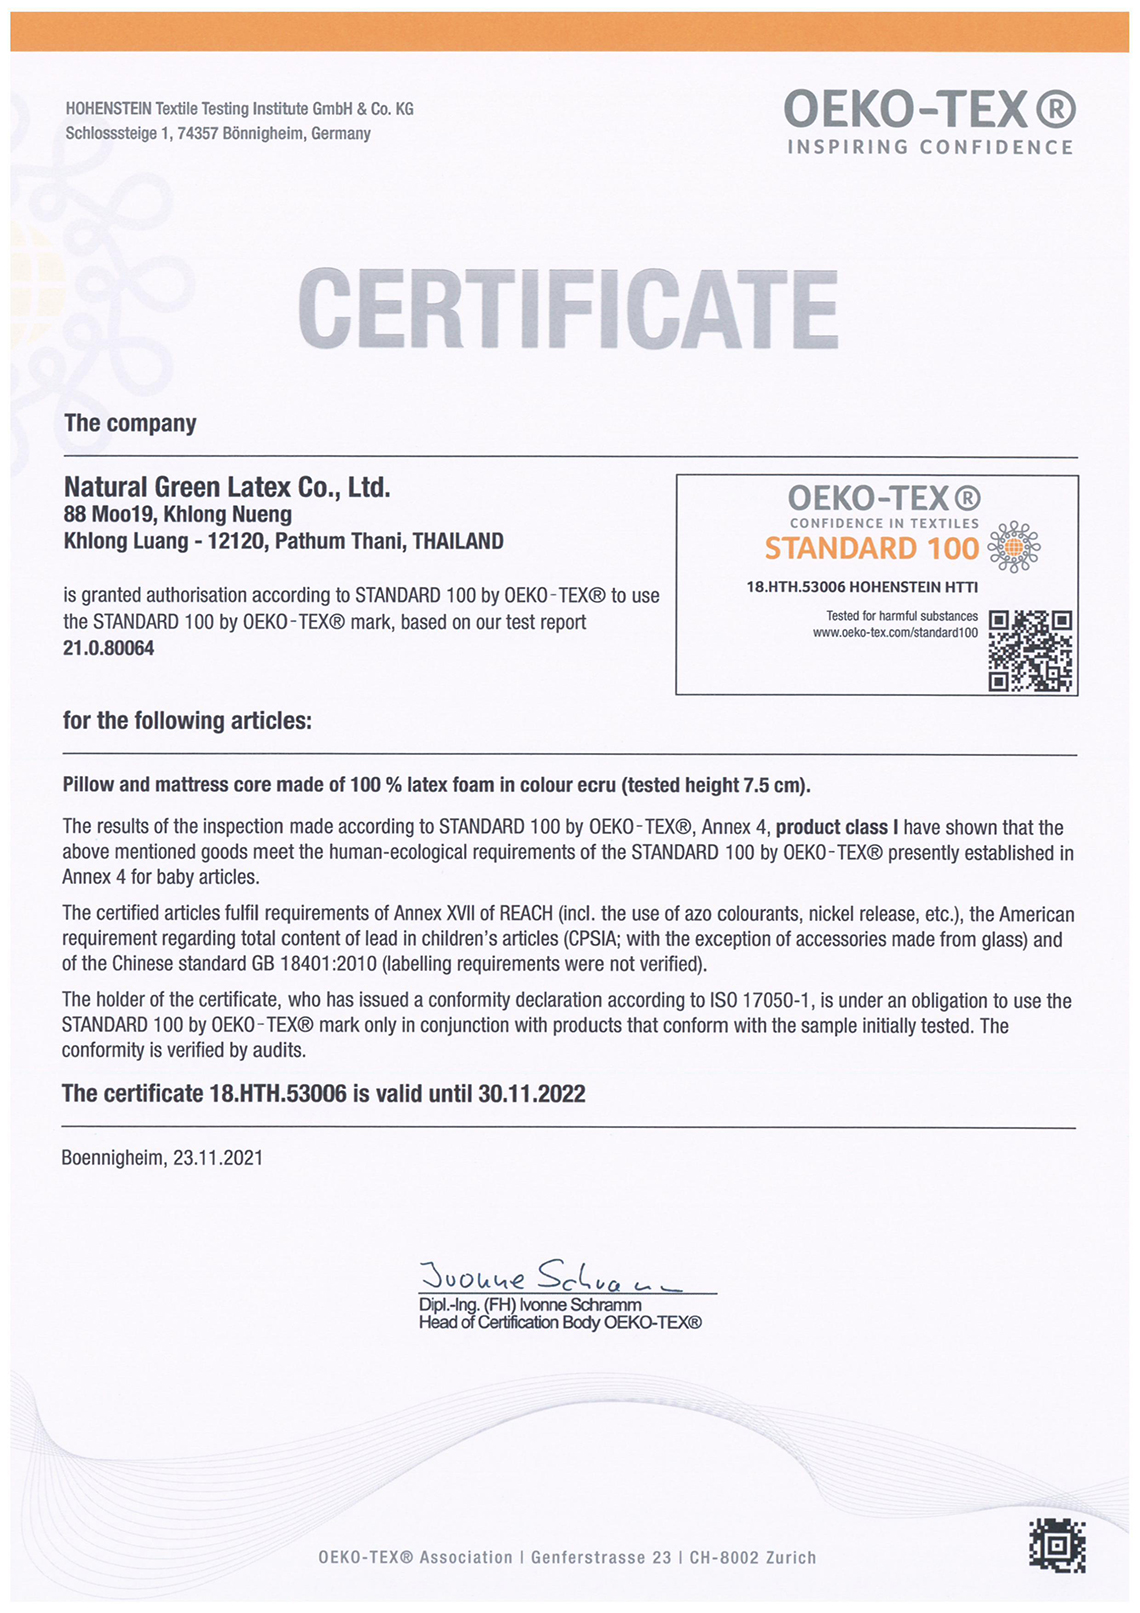 Dunlop Oeko Tex Certifications